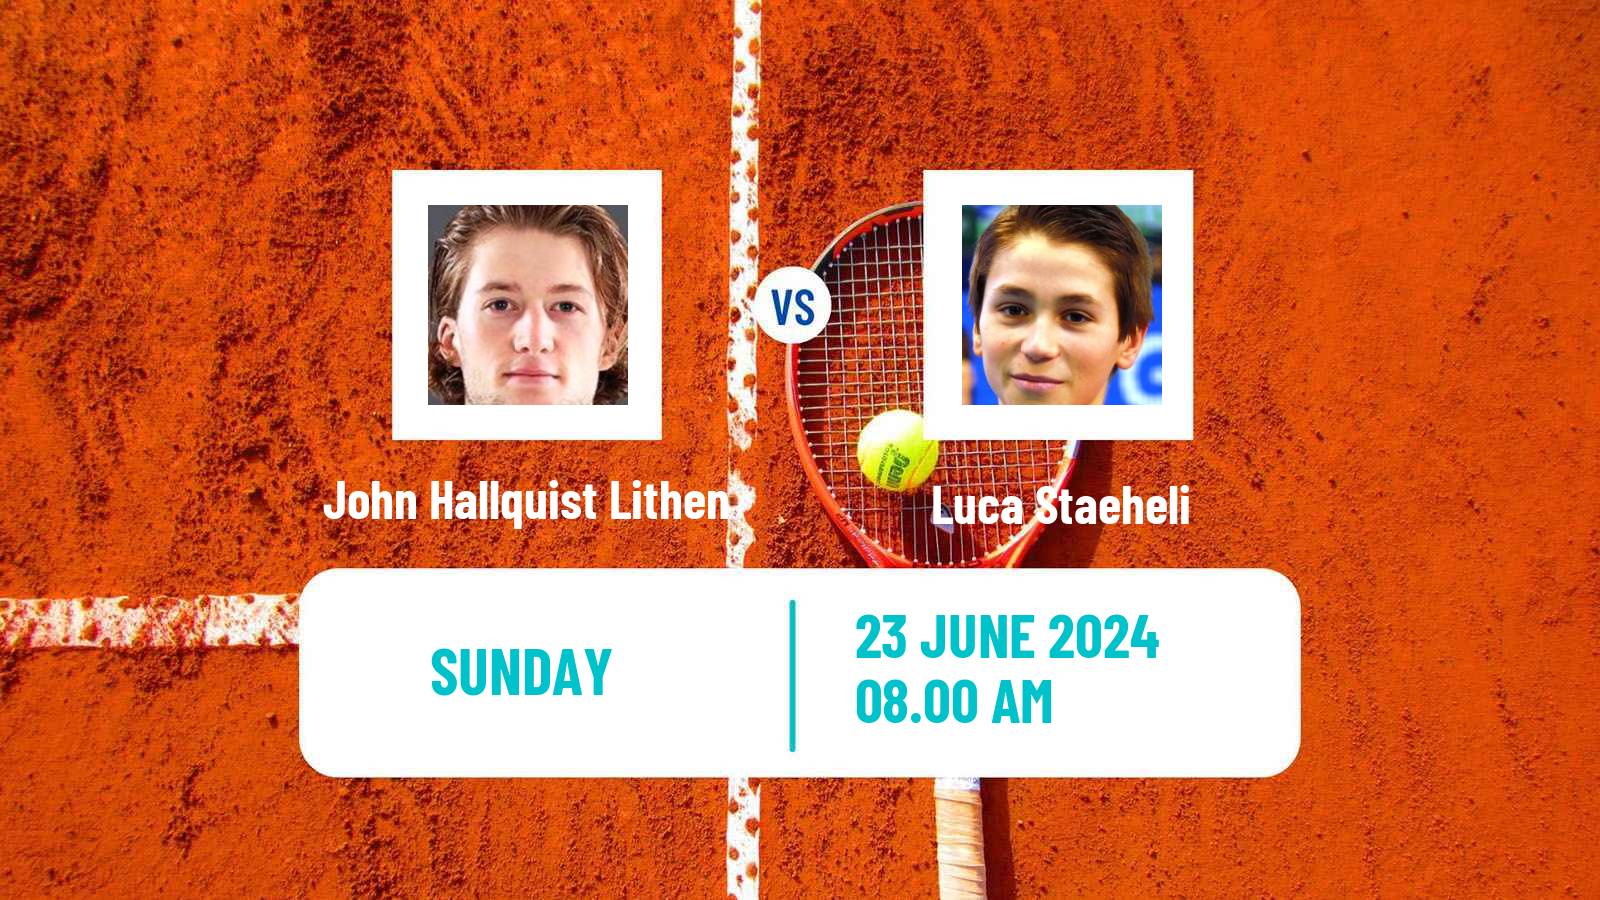 Tennis ITF M15 Koszalin 2 Men John Hallquist Lithen - Luca Staeheli